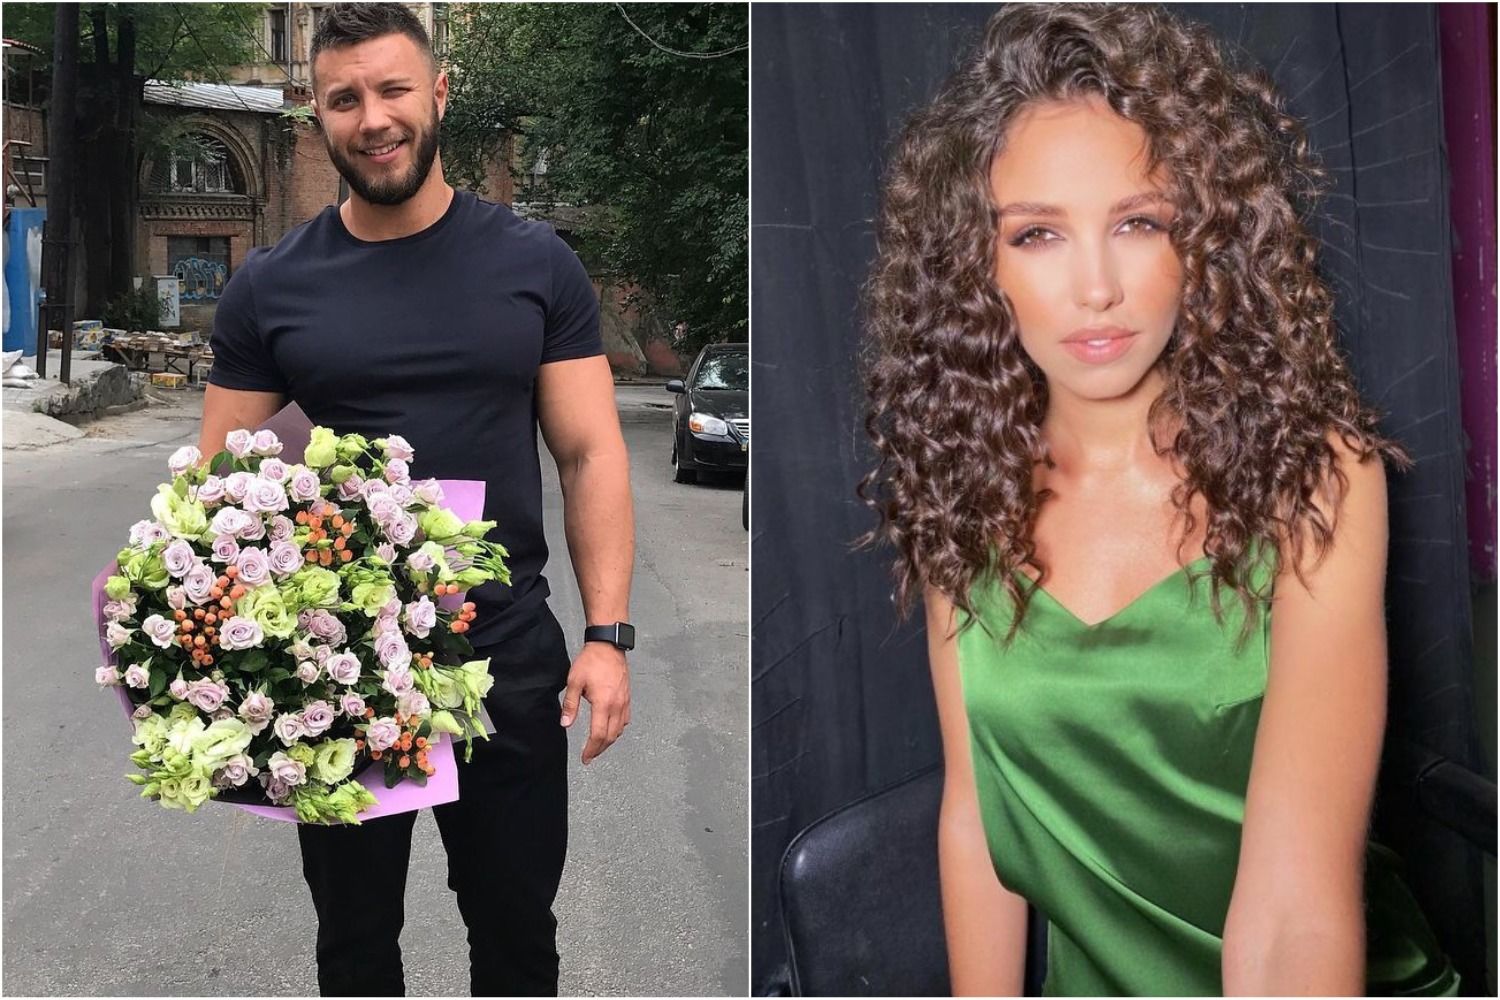 "Ее выбирала не голова", – экс-холостяк Заливако не выдержал и сделал заявление о своей невесте Богдан